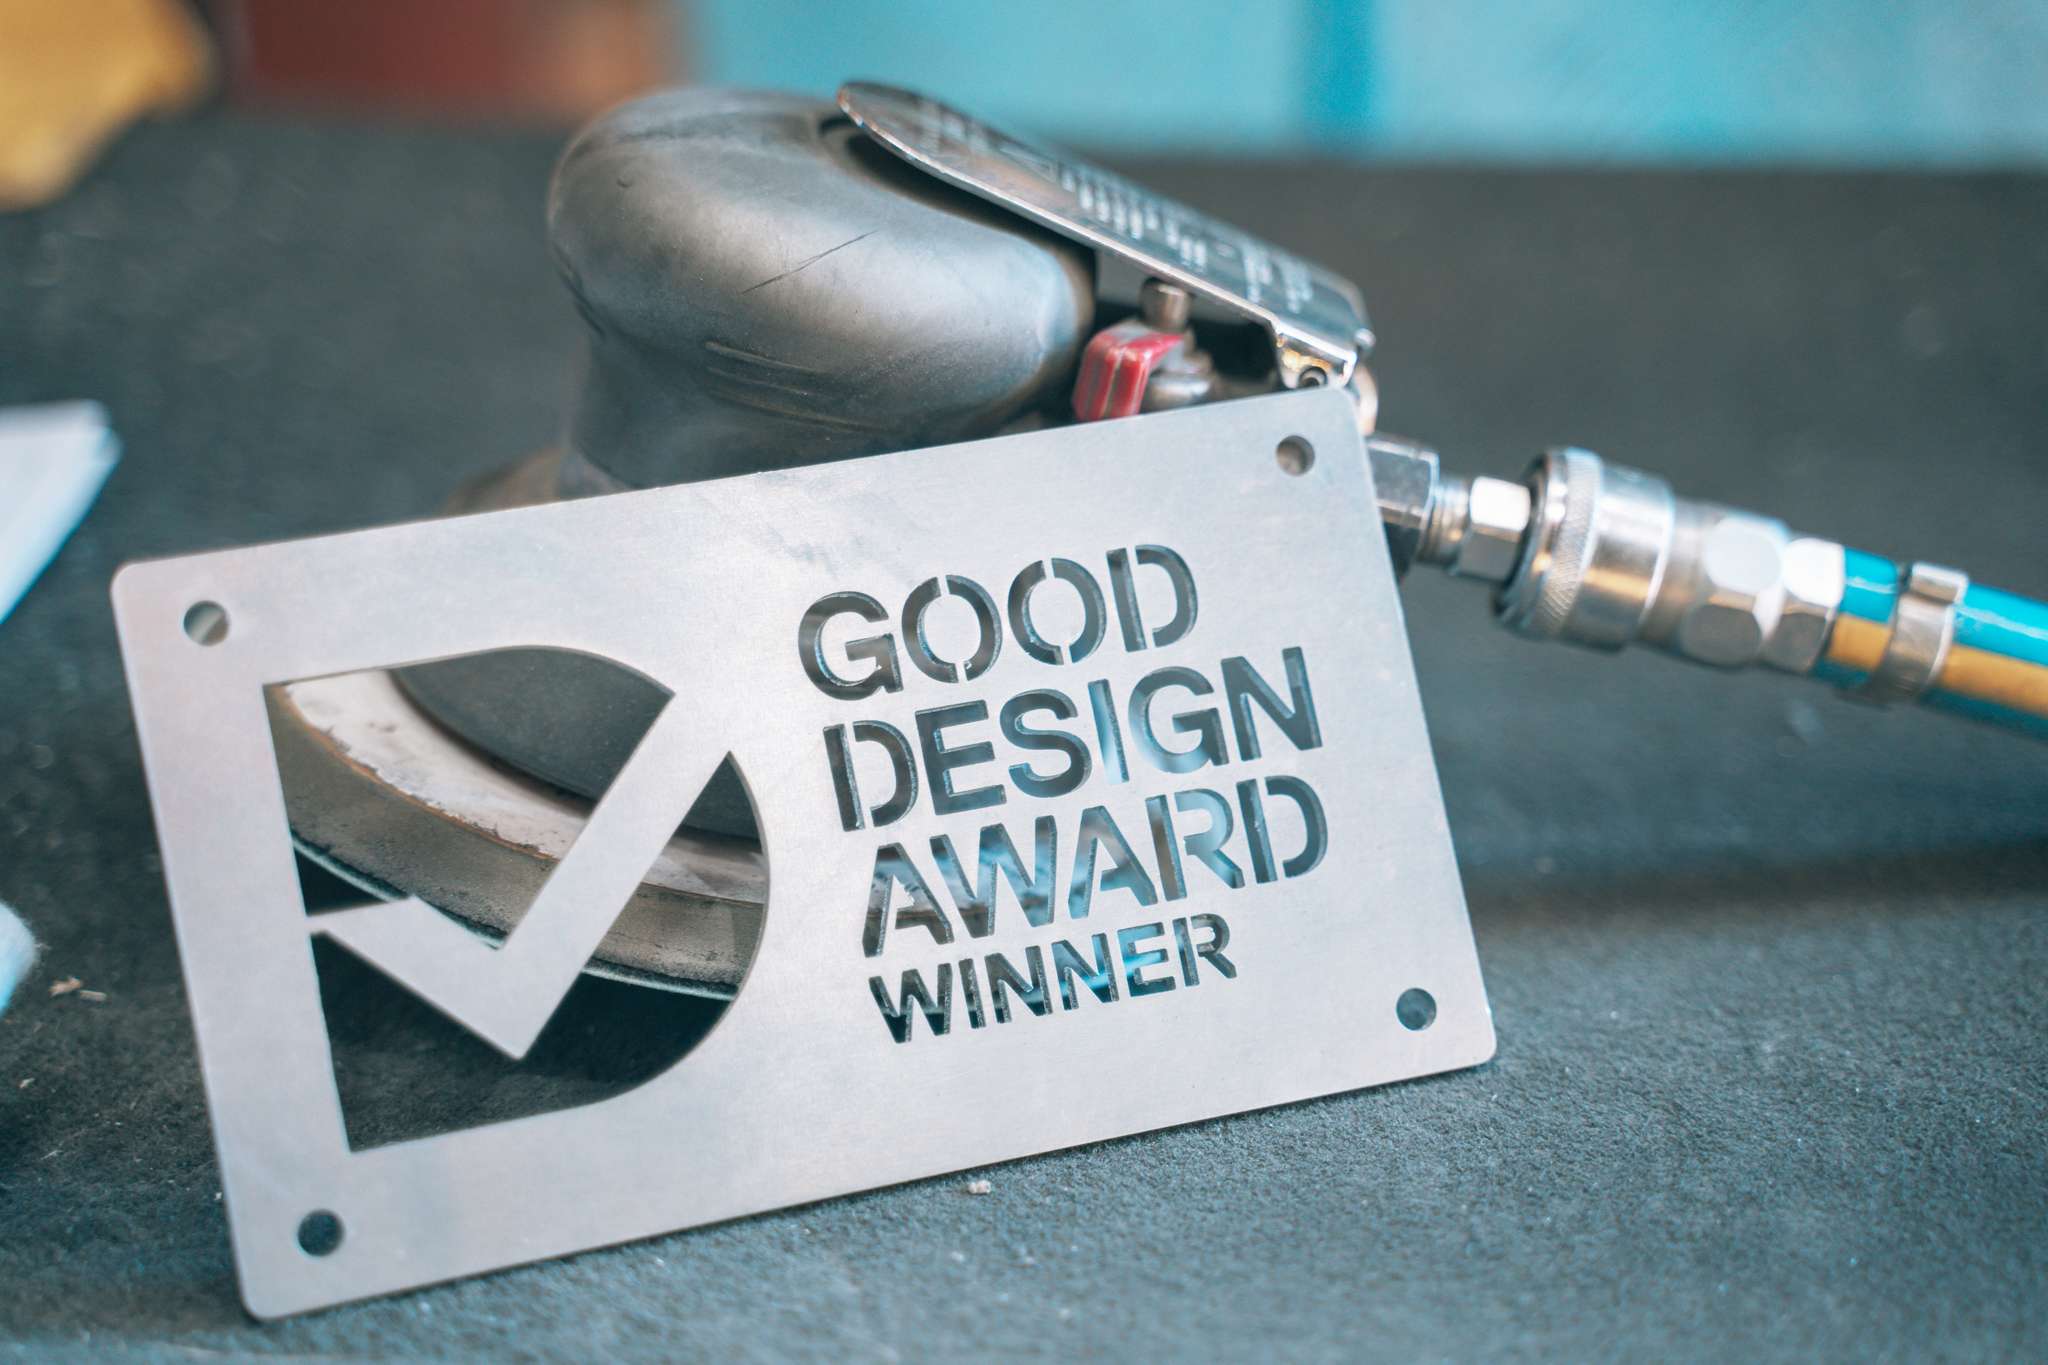 Good Design Award Winner